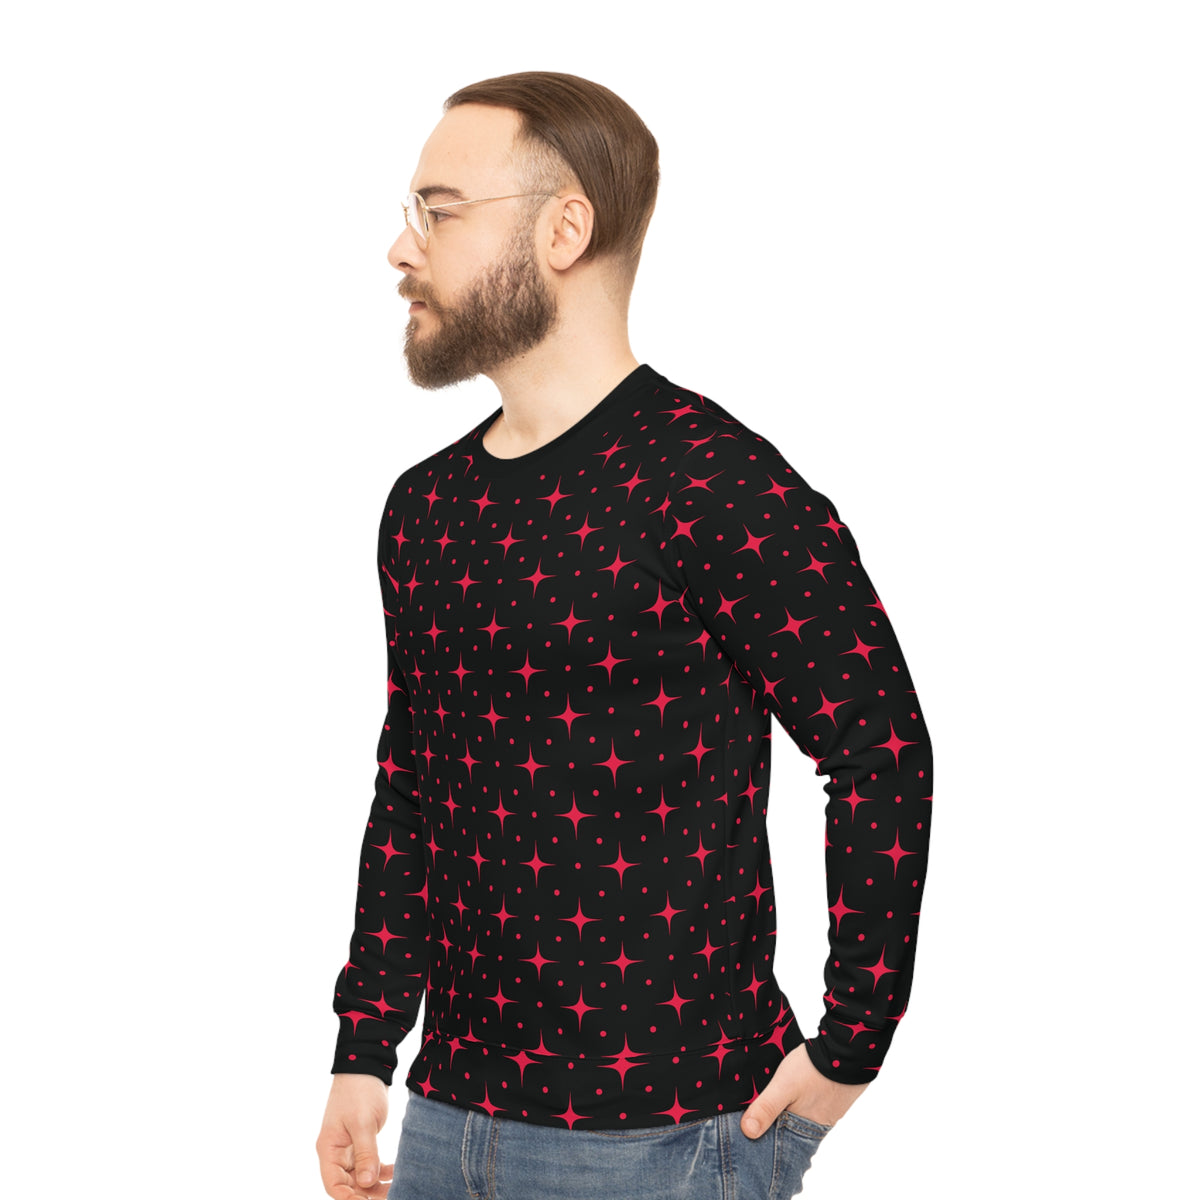 Star Lit Lightweight Sweatshirt - Red/Black, Unisex